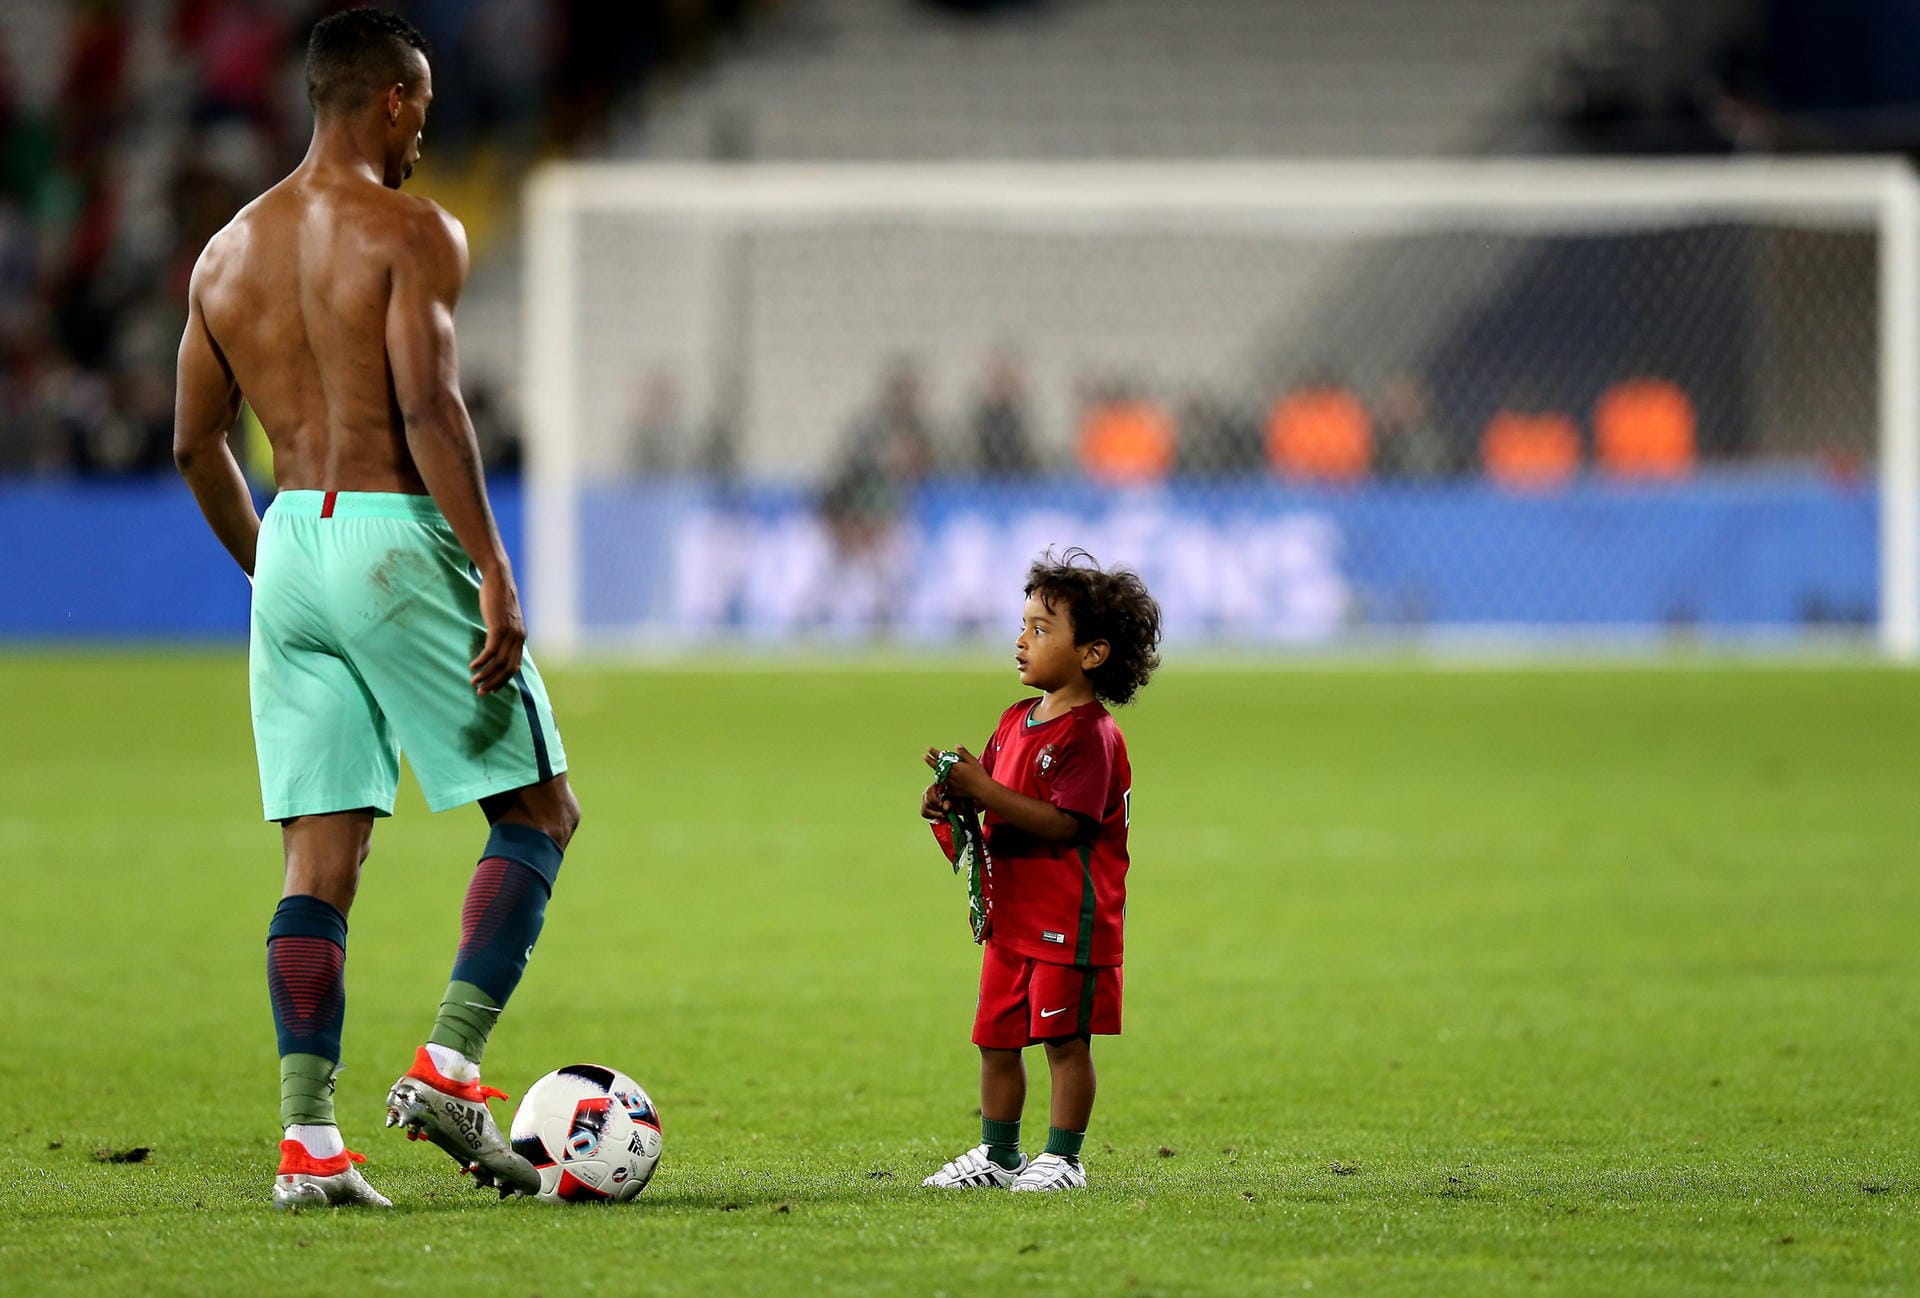 Besuch an Papas Arbeitsplatz: Der portugiesische Nationalspieler Nani holte nach dem gewonnenen Spiel gegen Kroatien seinen Sohn auf den Rasen.